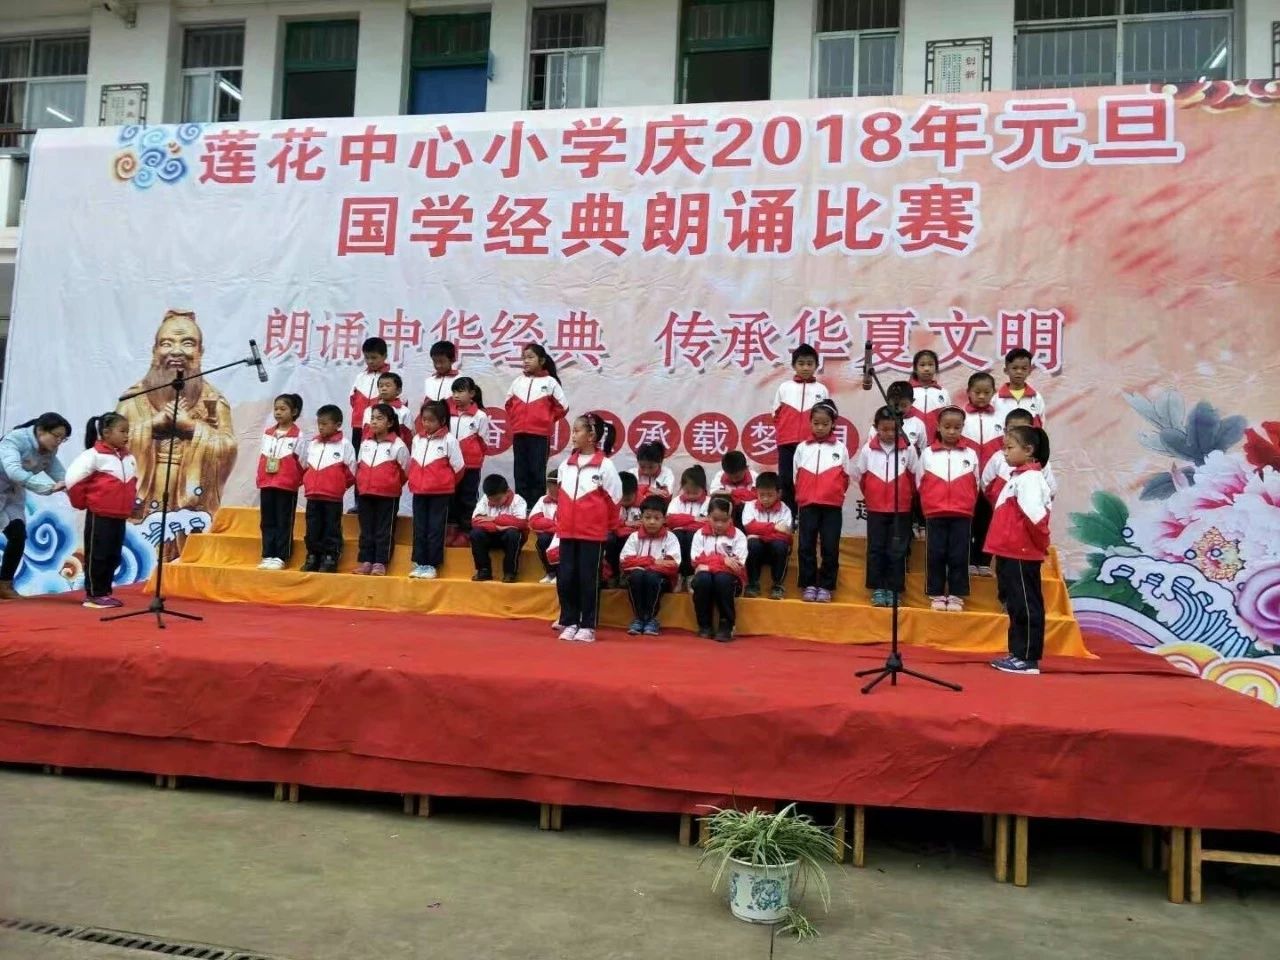 示范学校 | 中华优秀传统文化“六进”示范典型和道德模范事迹展播（二）160 / 作者:赖拐 / 帖子ID:267263